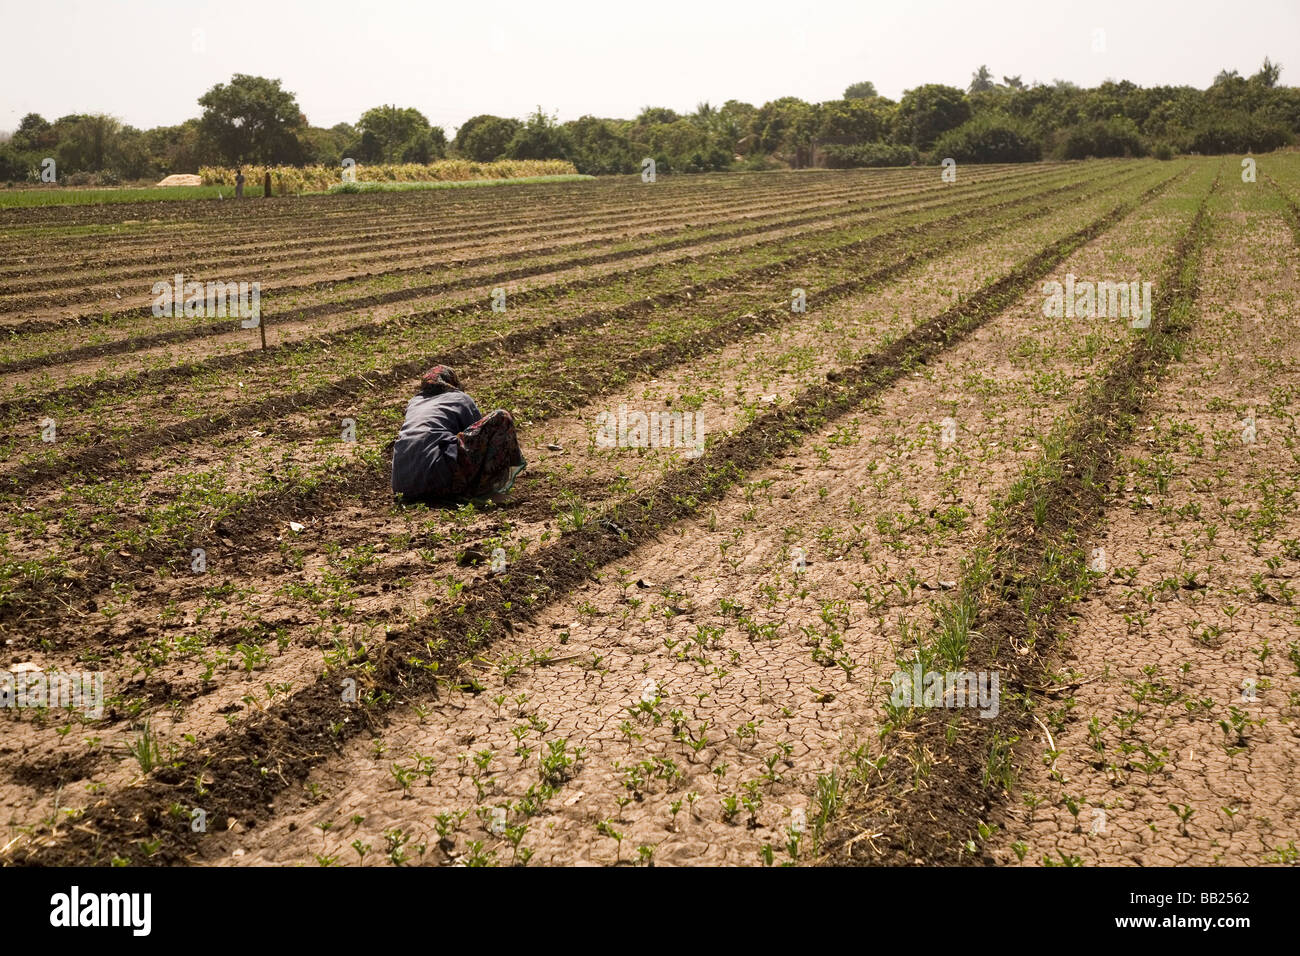 Die rissige Erde von einem Acker im Sasan, Gujarat. Viele indische Bauern leiden unter Wassermangel. Stockfoto